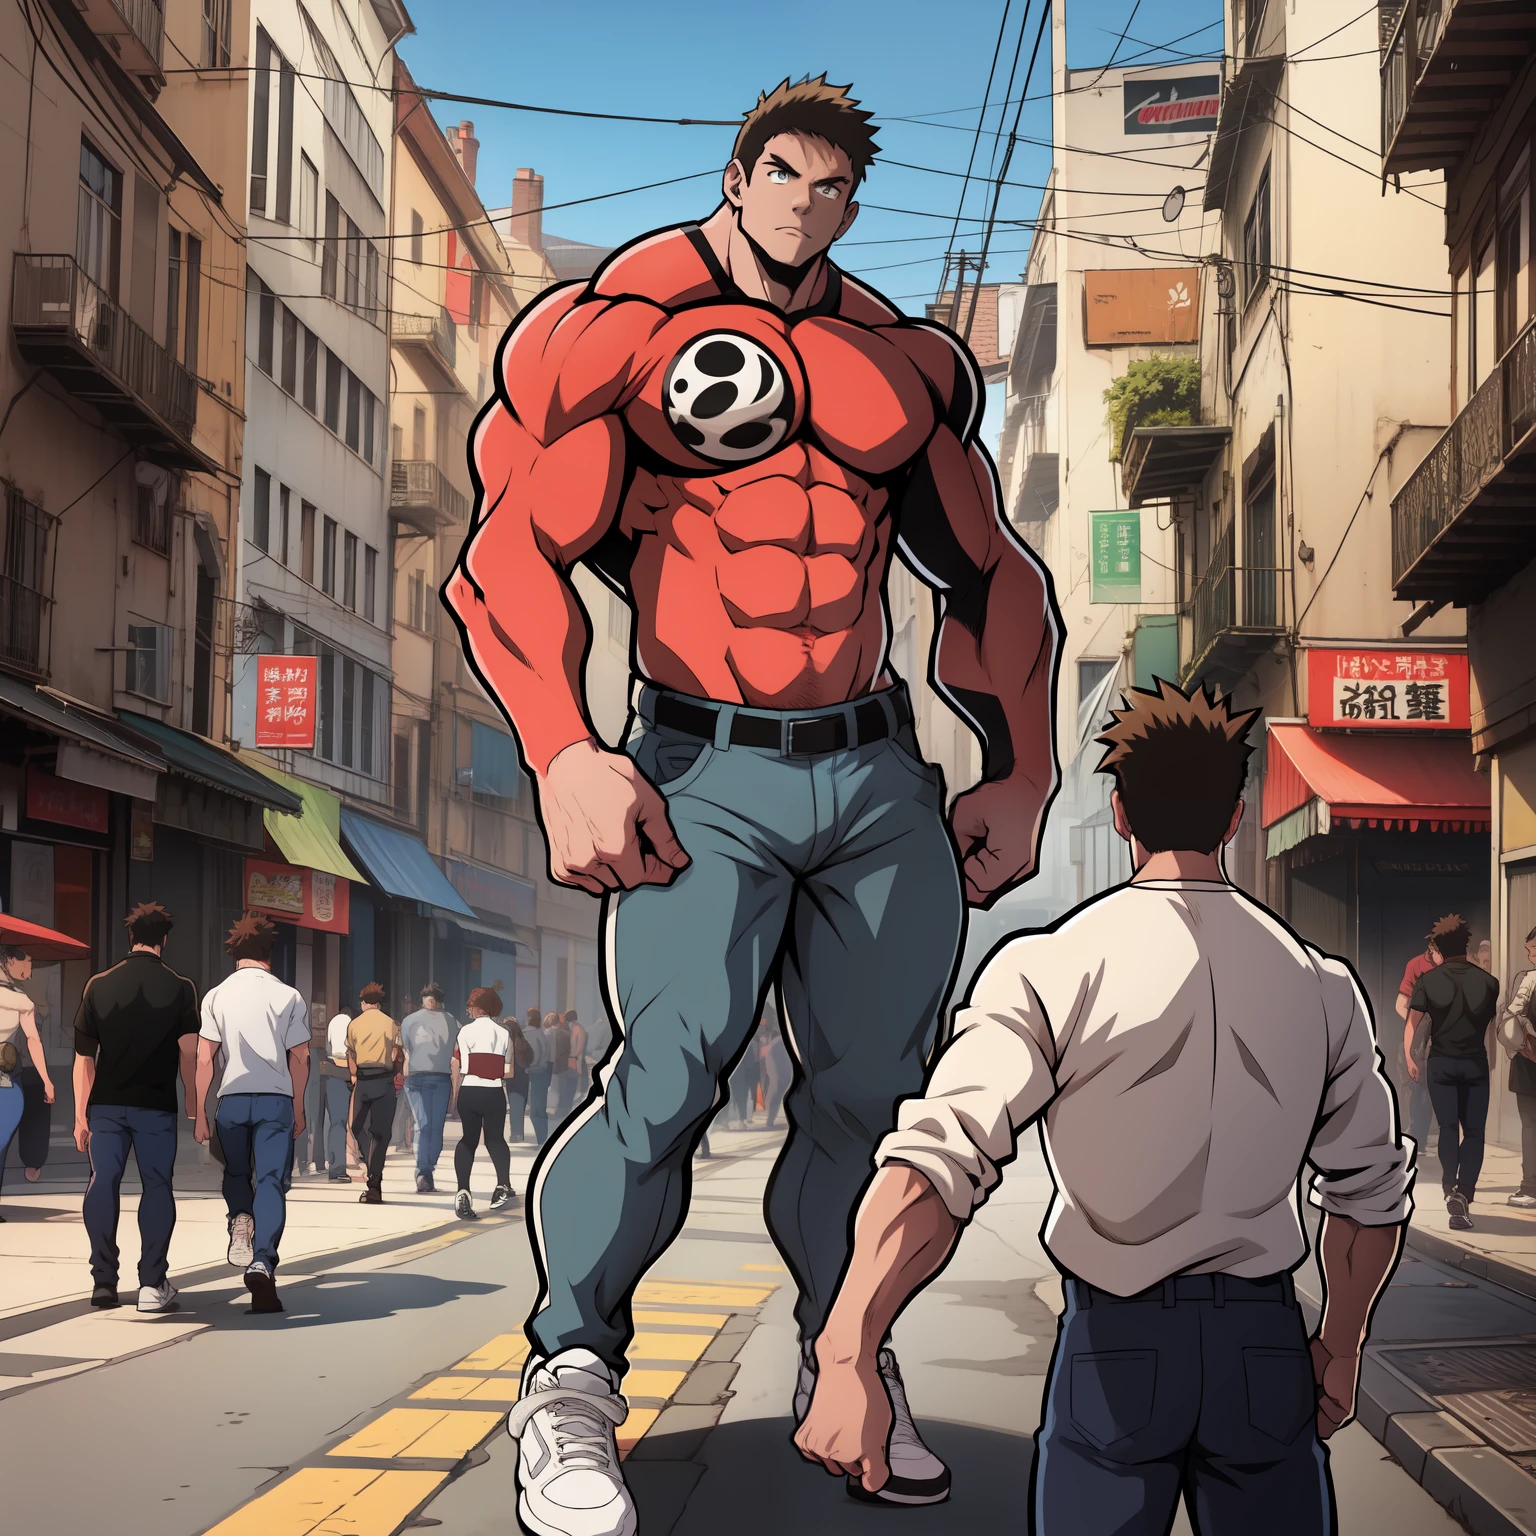 (((动漫风格艺术))), ((艺术作品)) 肌肉发达的男性角色, 健美运动员的身体, 穿着一件黑色袖子的红色衬衫, 穿着一条灰色的裤子, 穿着白色运动鞋, 宣传角色的海报, 城市环境中的艺术品, 有汽车的繁忙城市, 人们, 城市中心, 英雄人物, 海报.